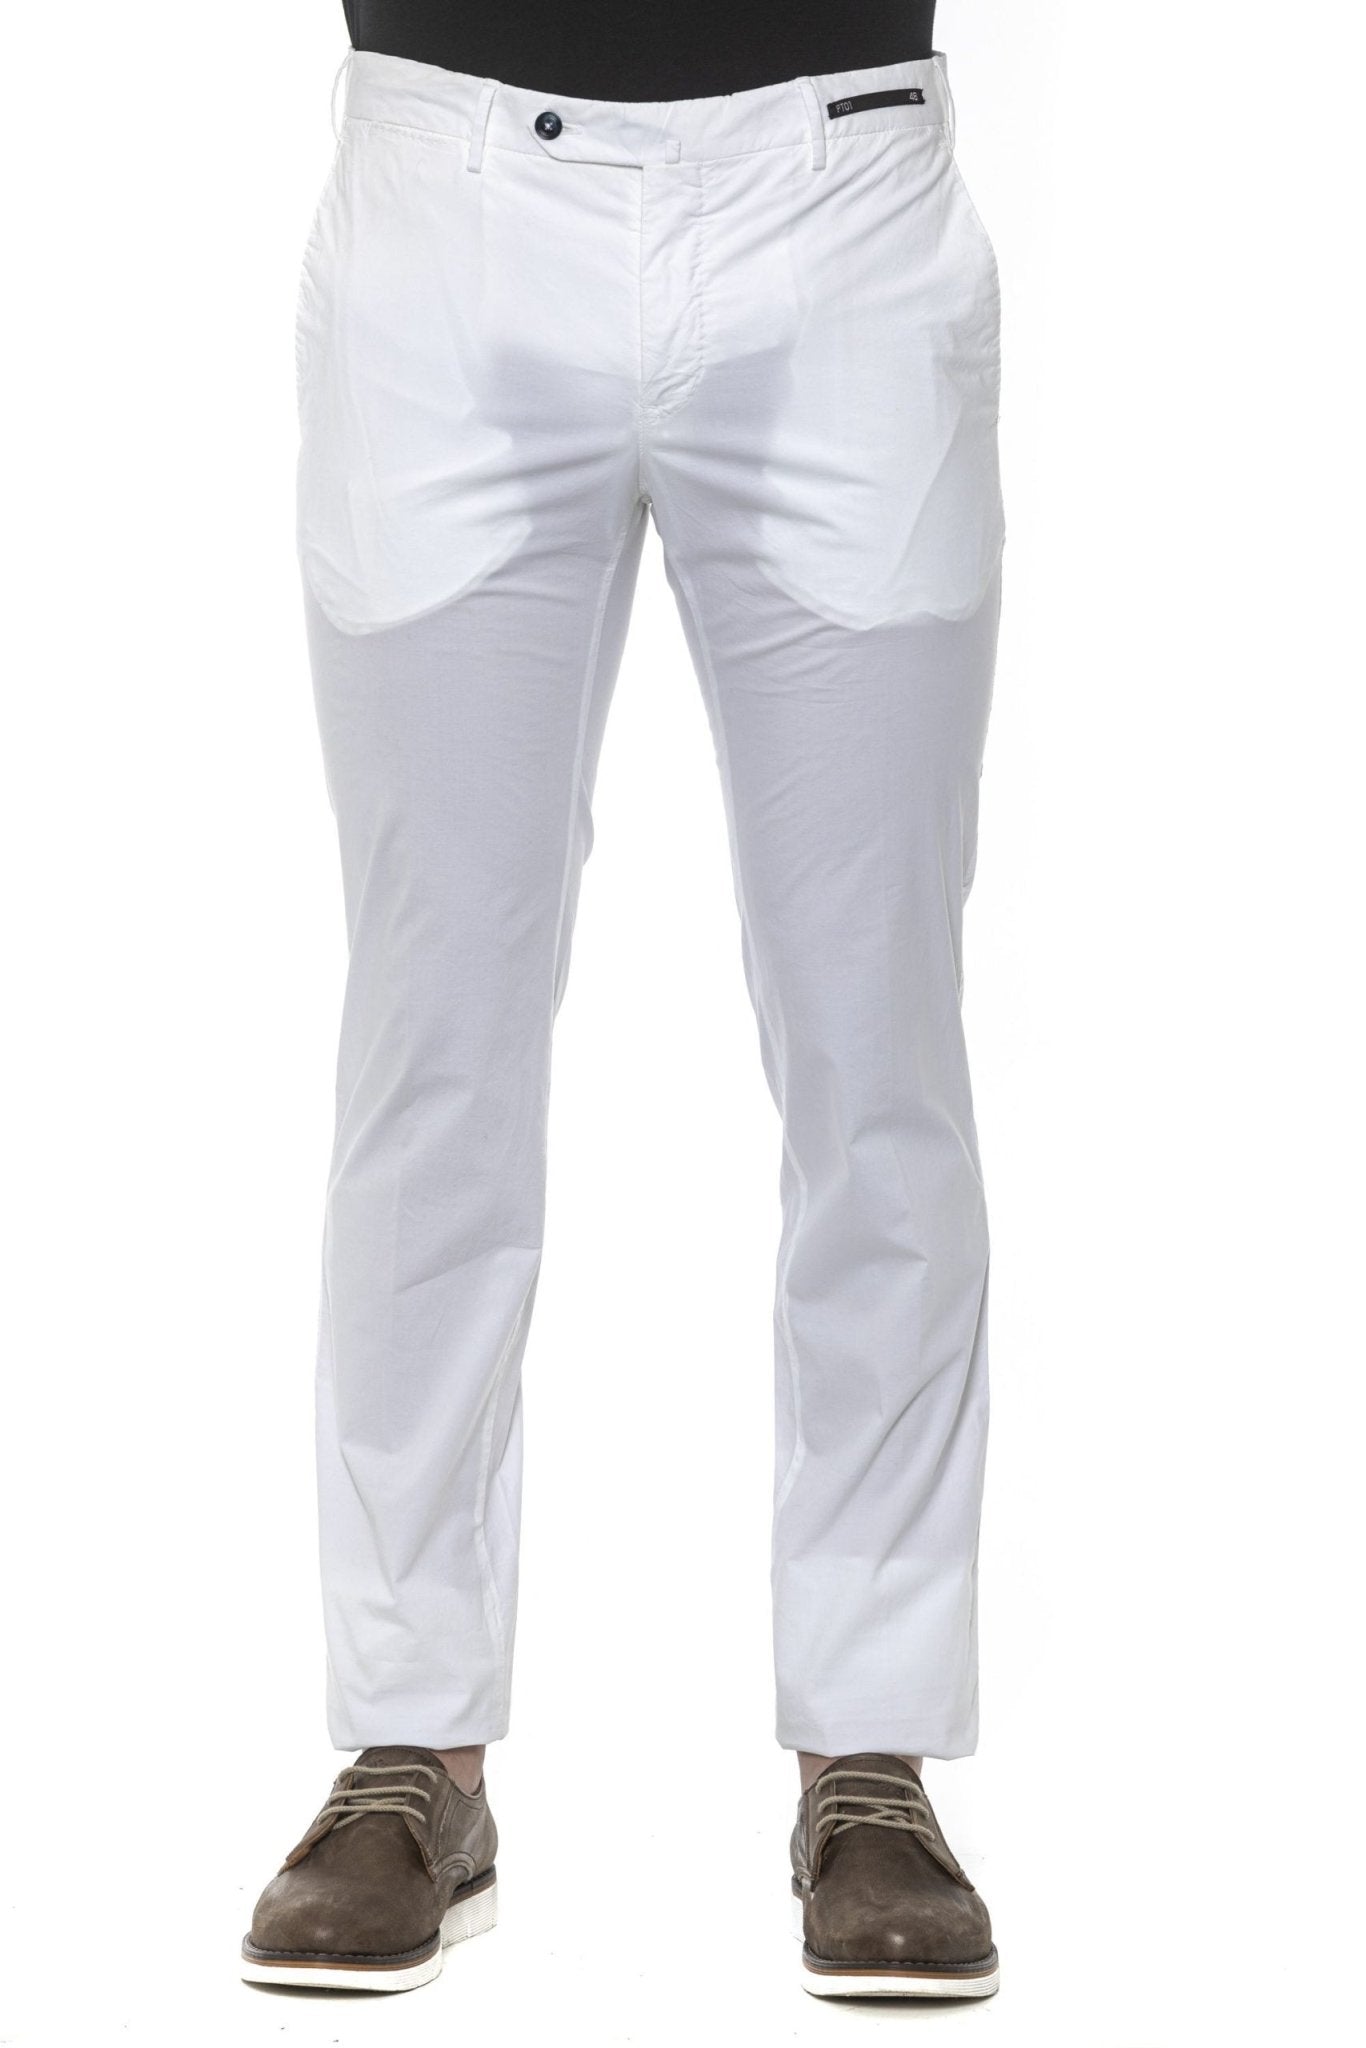 PT Torino White Cotton Jeans & Pant - Fizigo